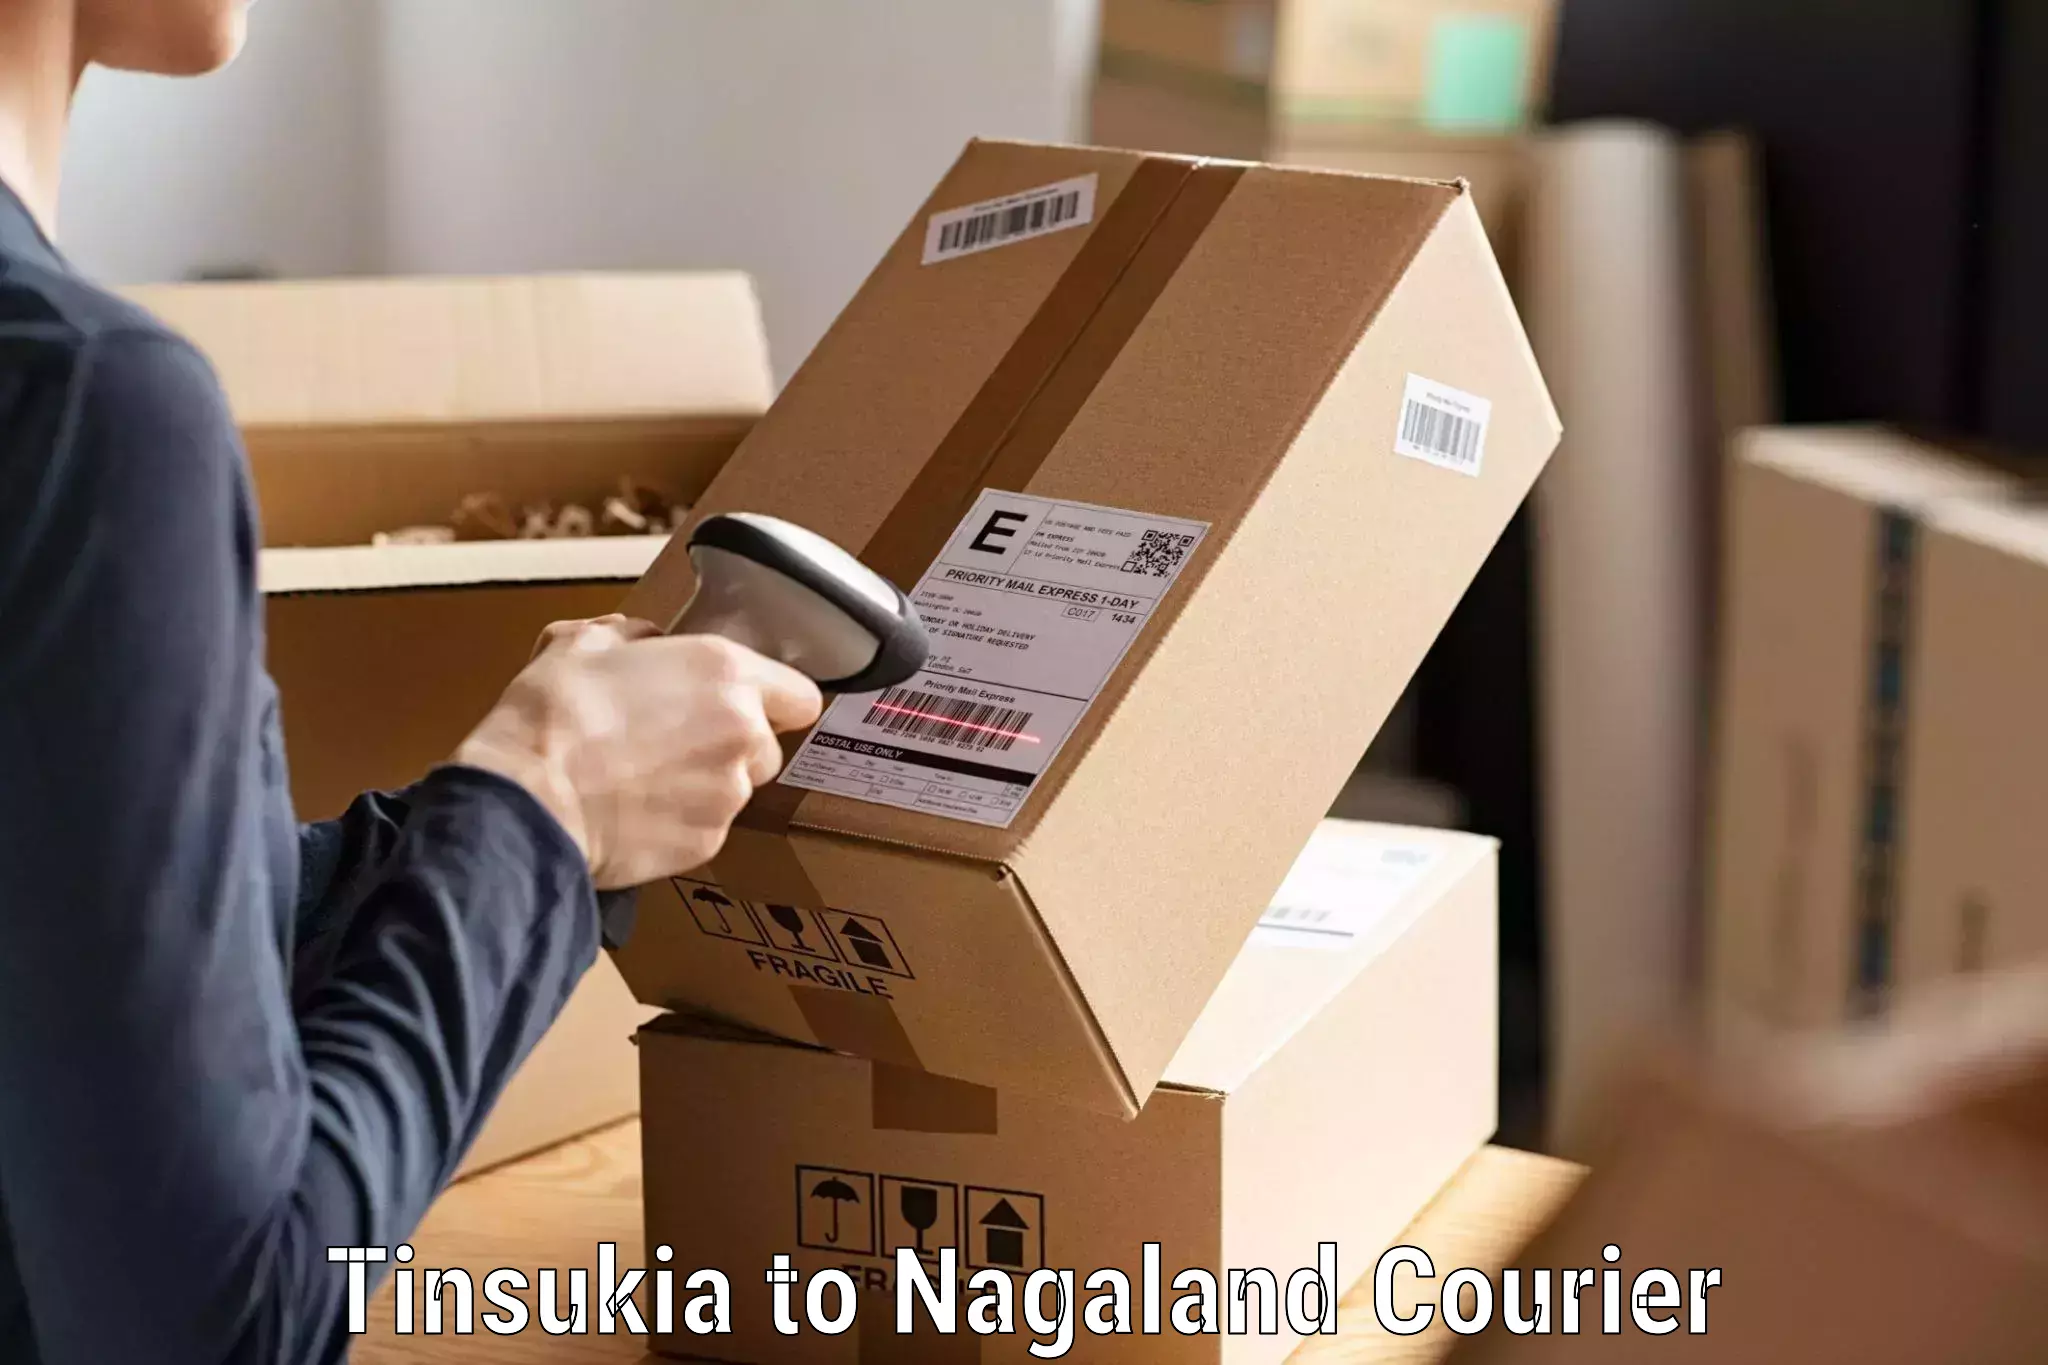 Efficient order fulfillment Tinsukia to Dimapur